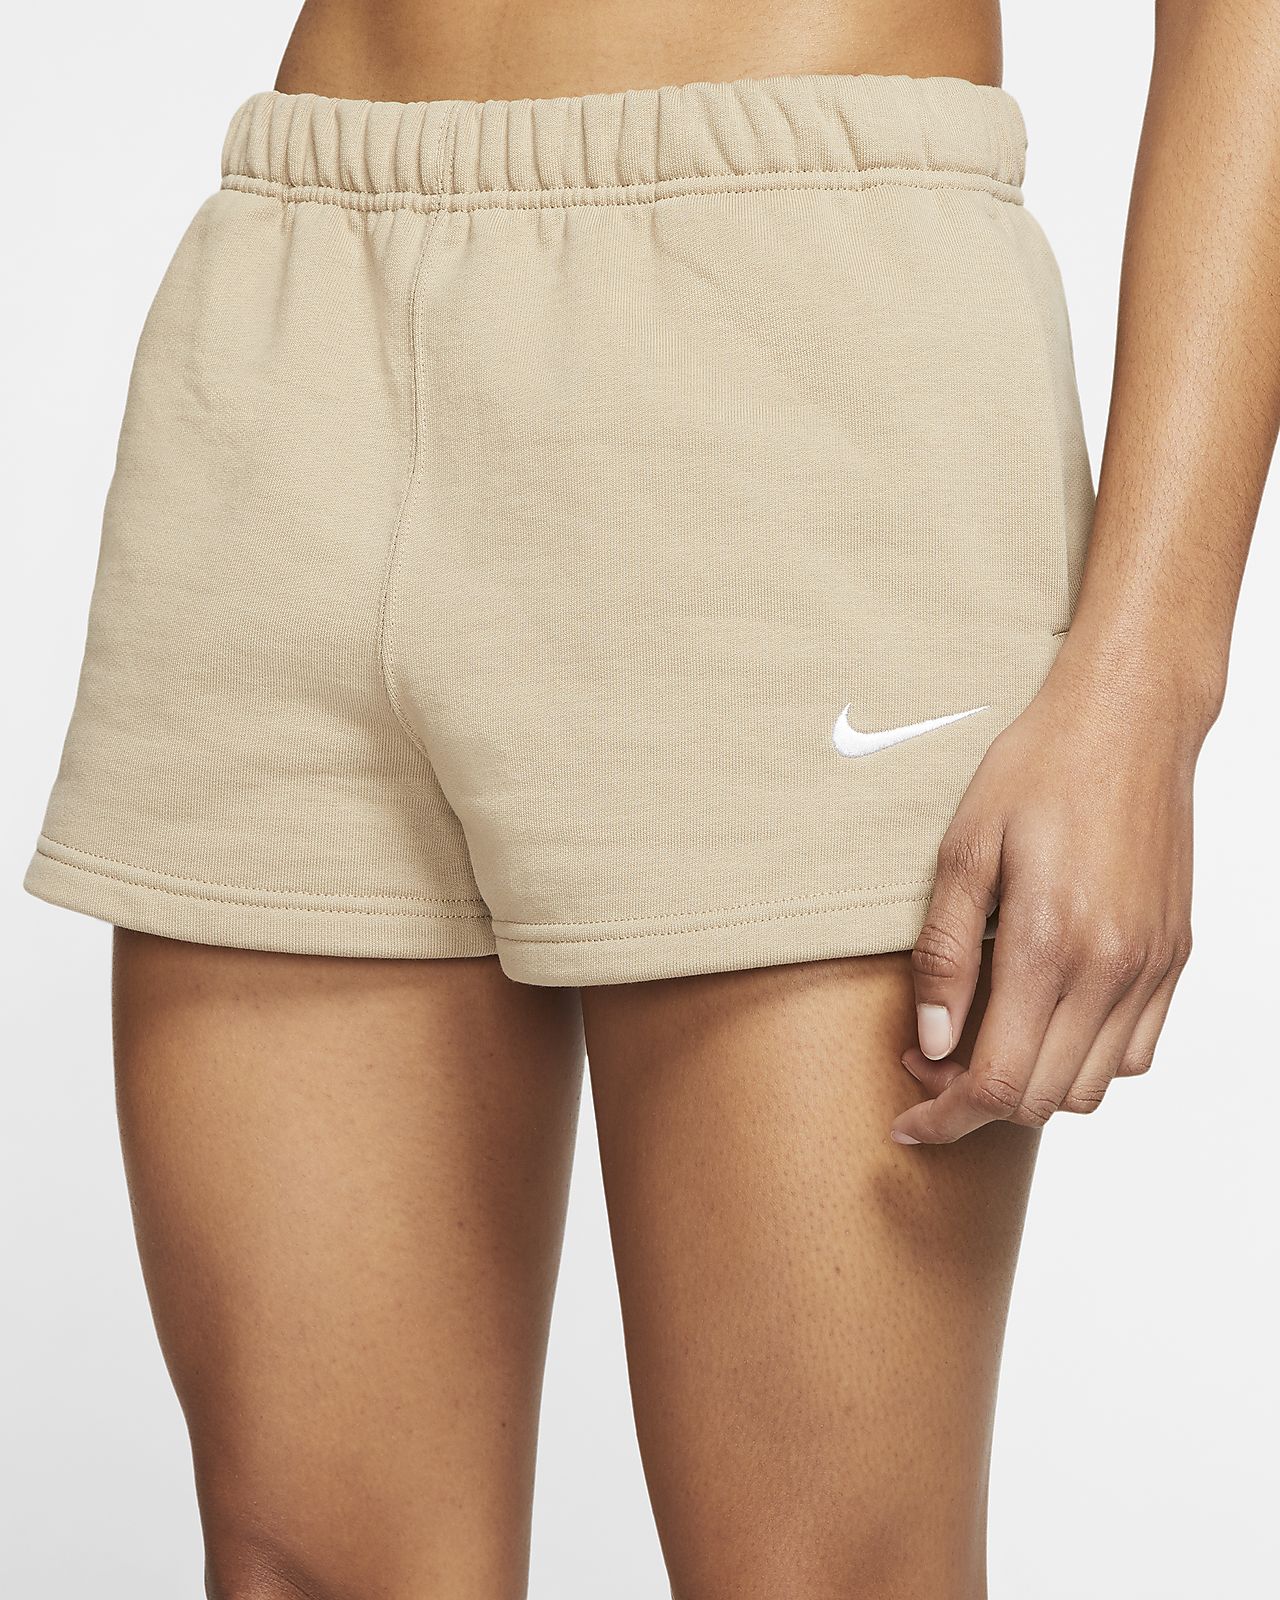 sweat shorts nike womens